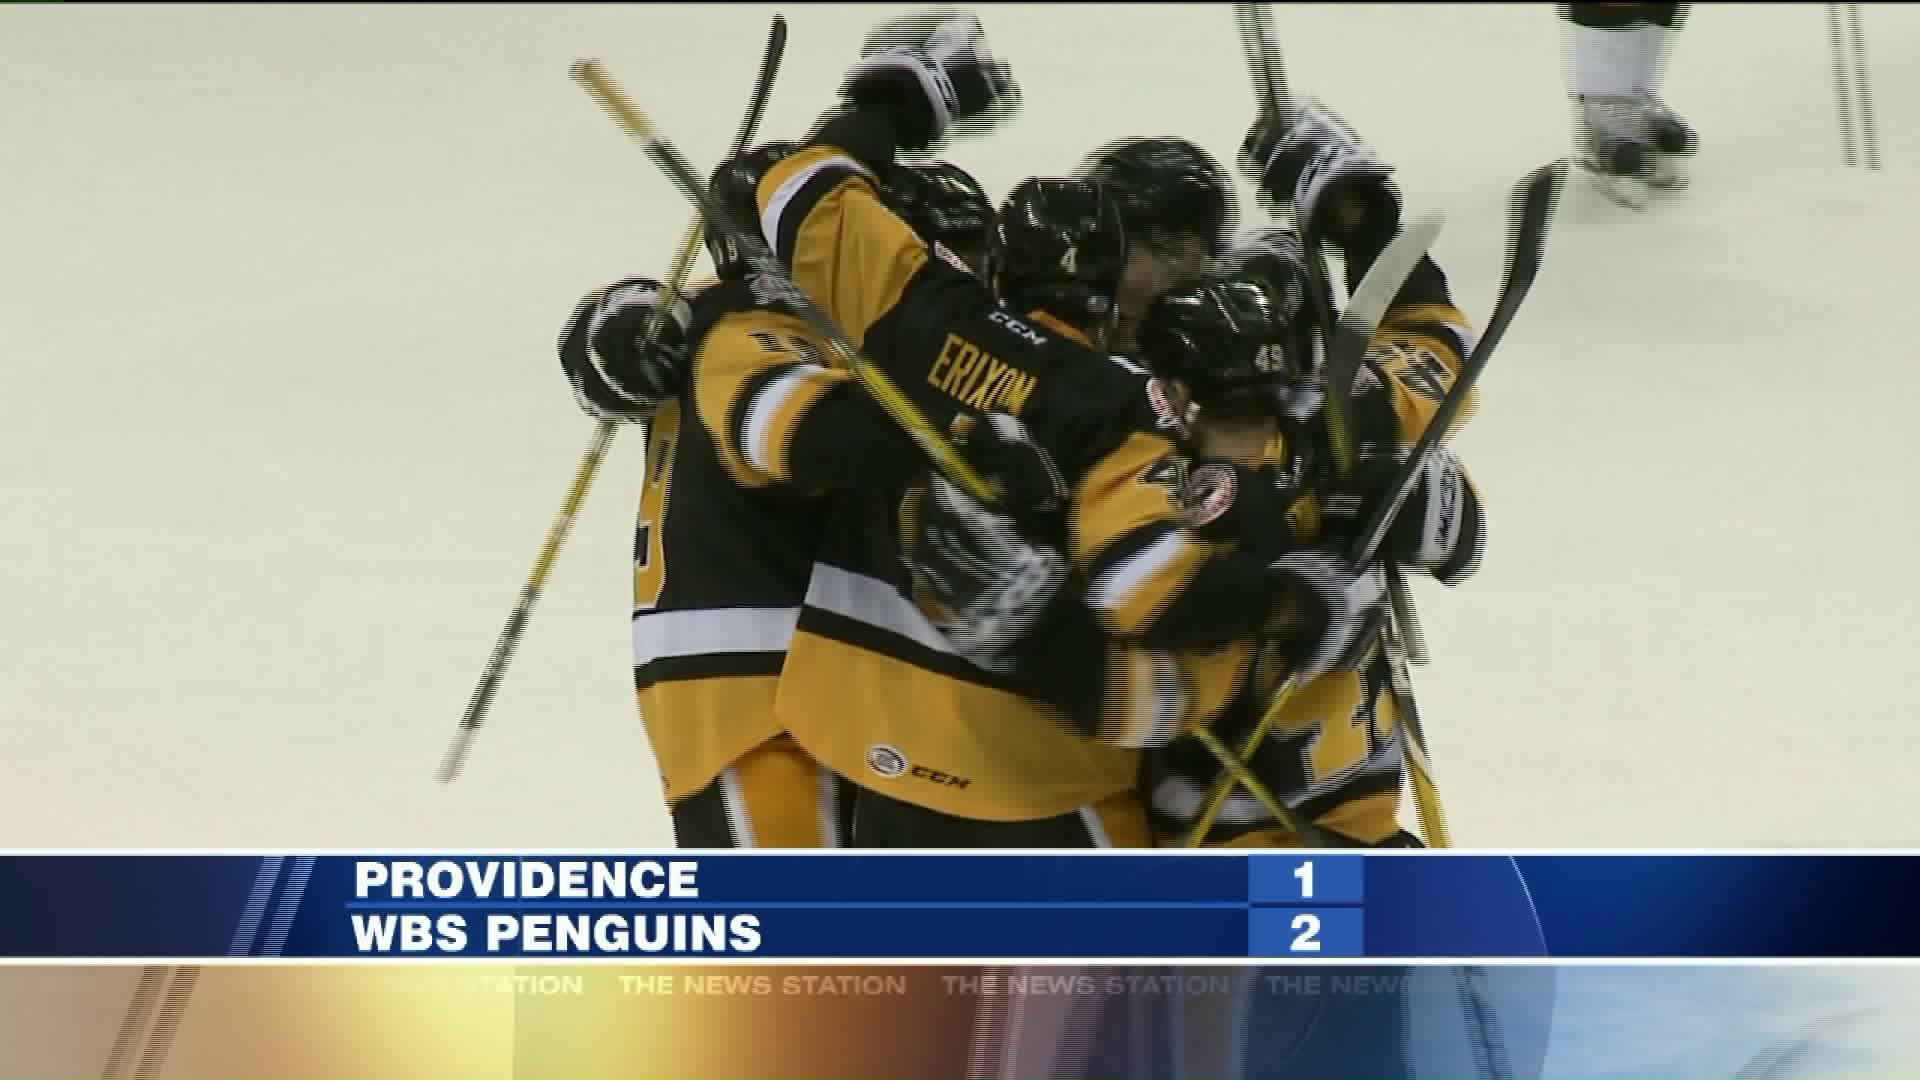 Providence vs Penguins